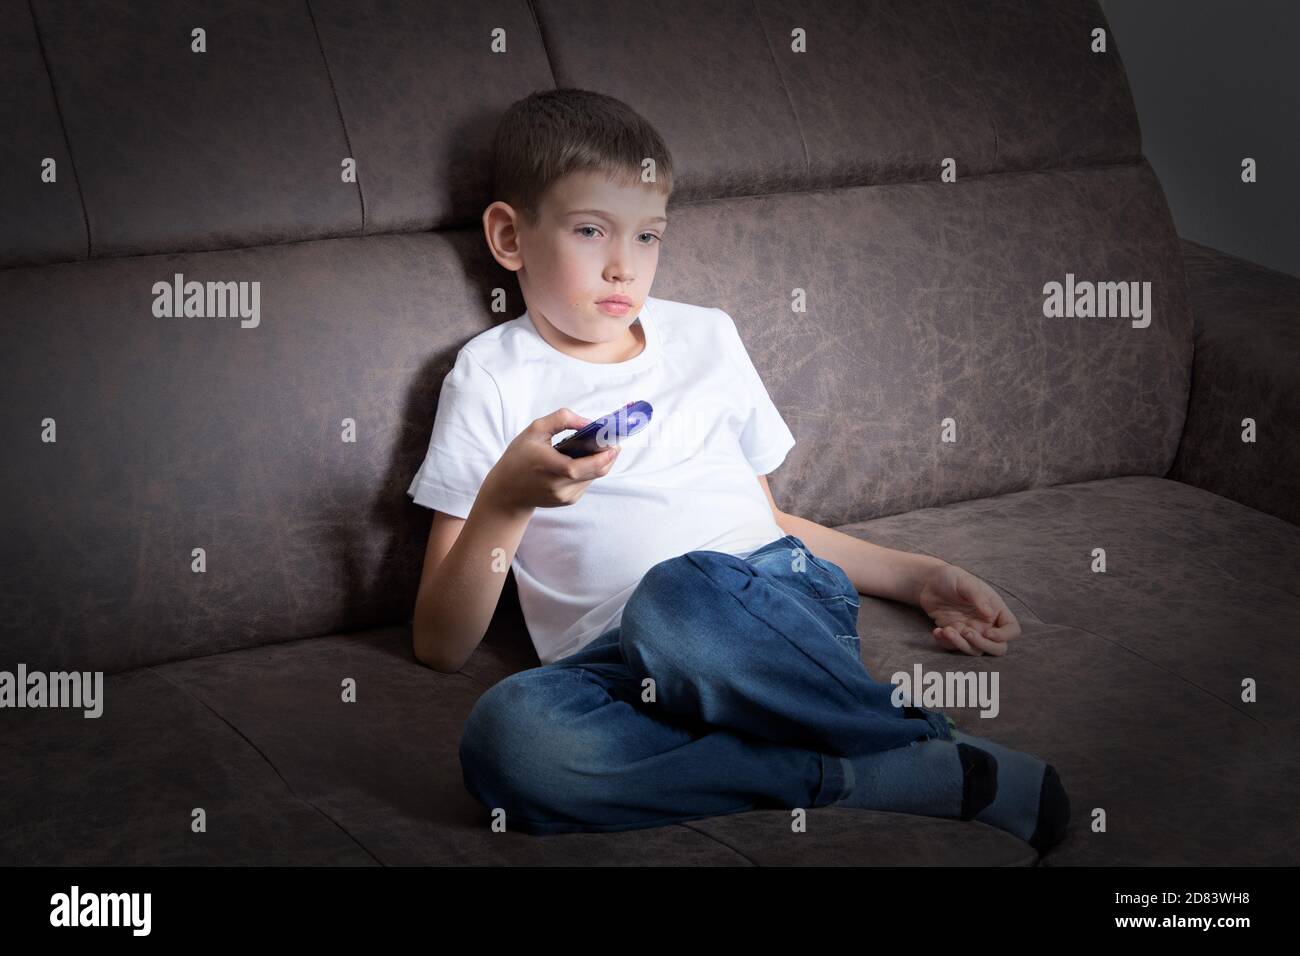 Un joli garçon est assis sur le canapé à l'aide de la télécommande, l'enfant regarde la télévision. Le concept des loisirs pour les enfants, l'impact de la télévision Banque D'Images